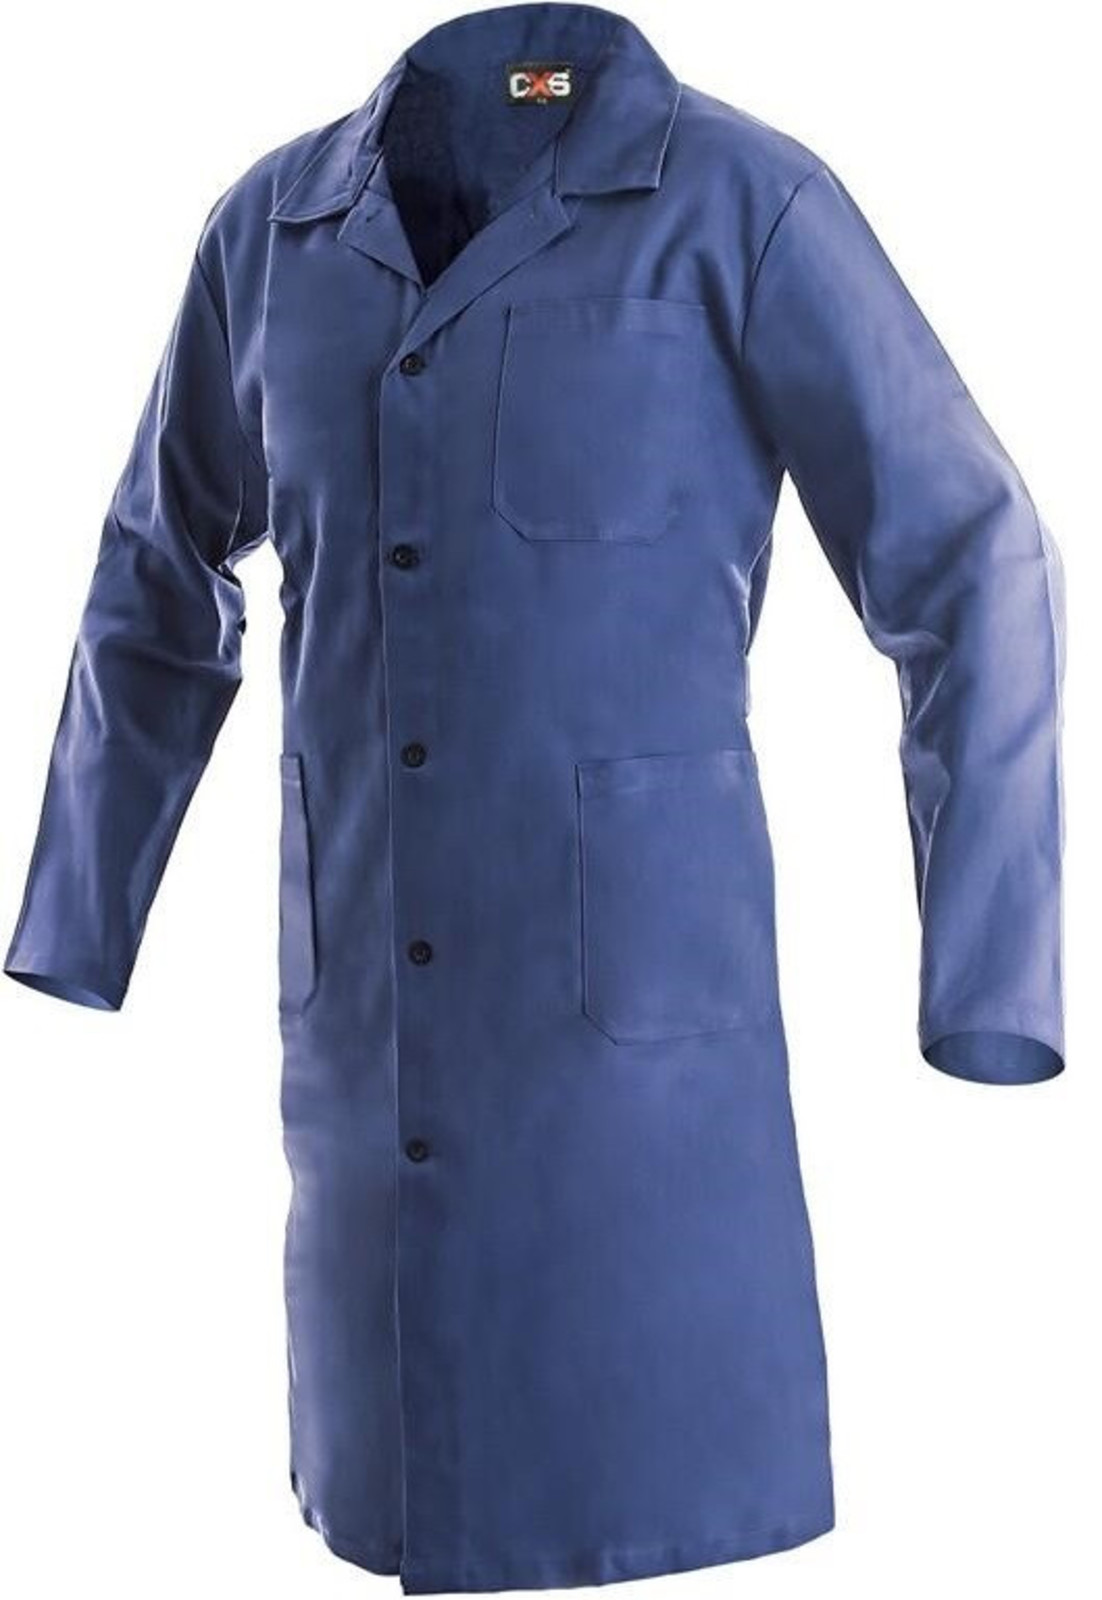 Pánsky pracovný plášť CXS Klasik Venca - veľkosť: 60, farba: modrá